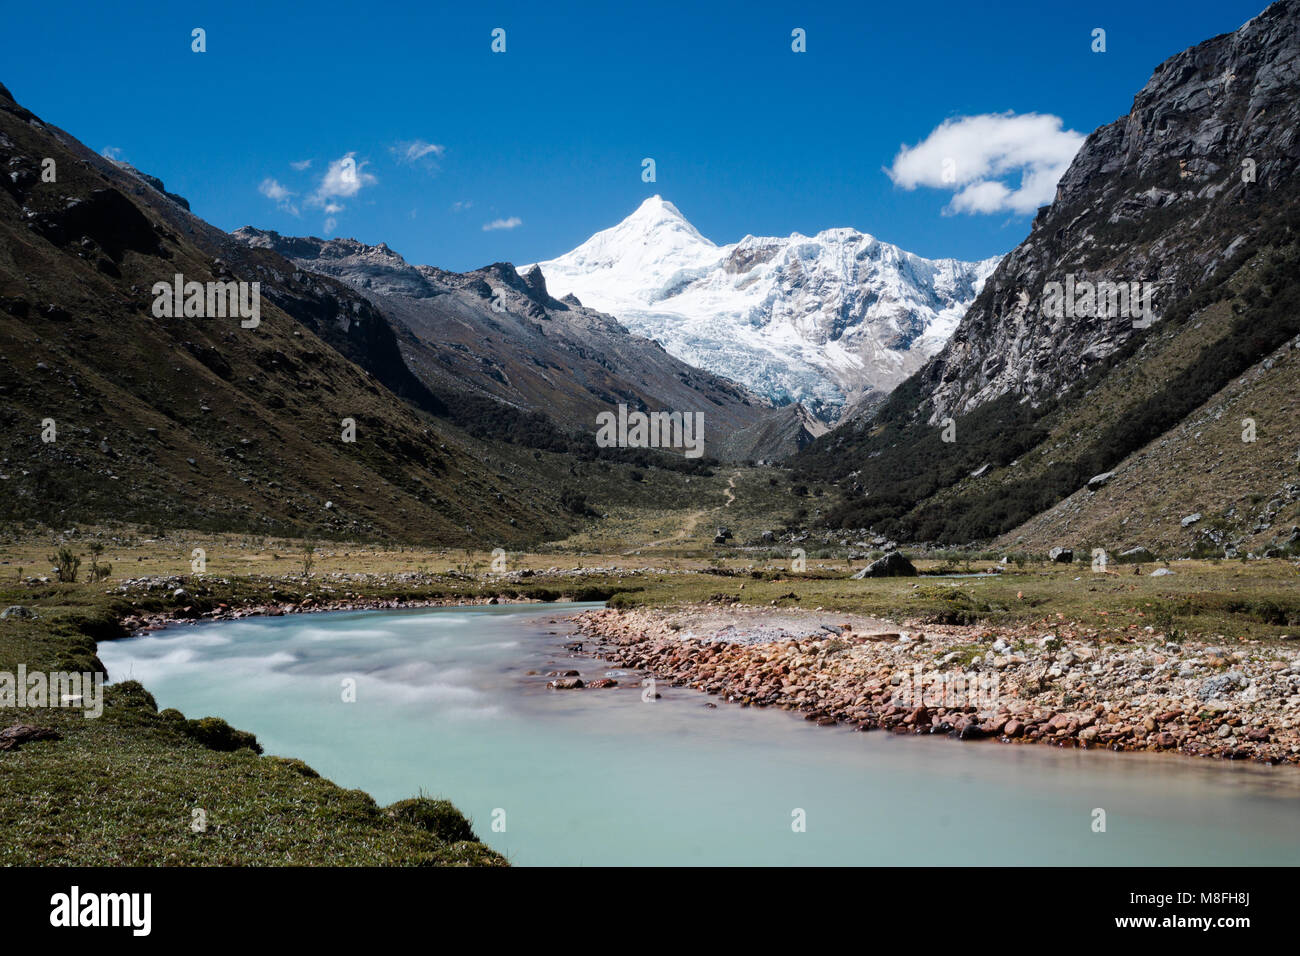 La vallée de montagnes magnifiques avec des sommets enneigés et une rivière turquoise mountain haut dans la Cordillère des Andes au Pérou Banque D'Images